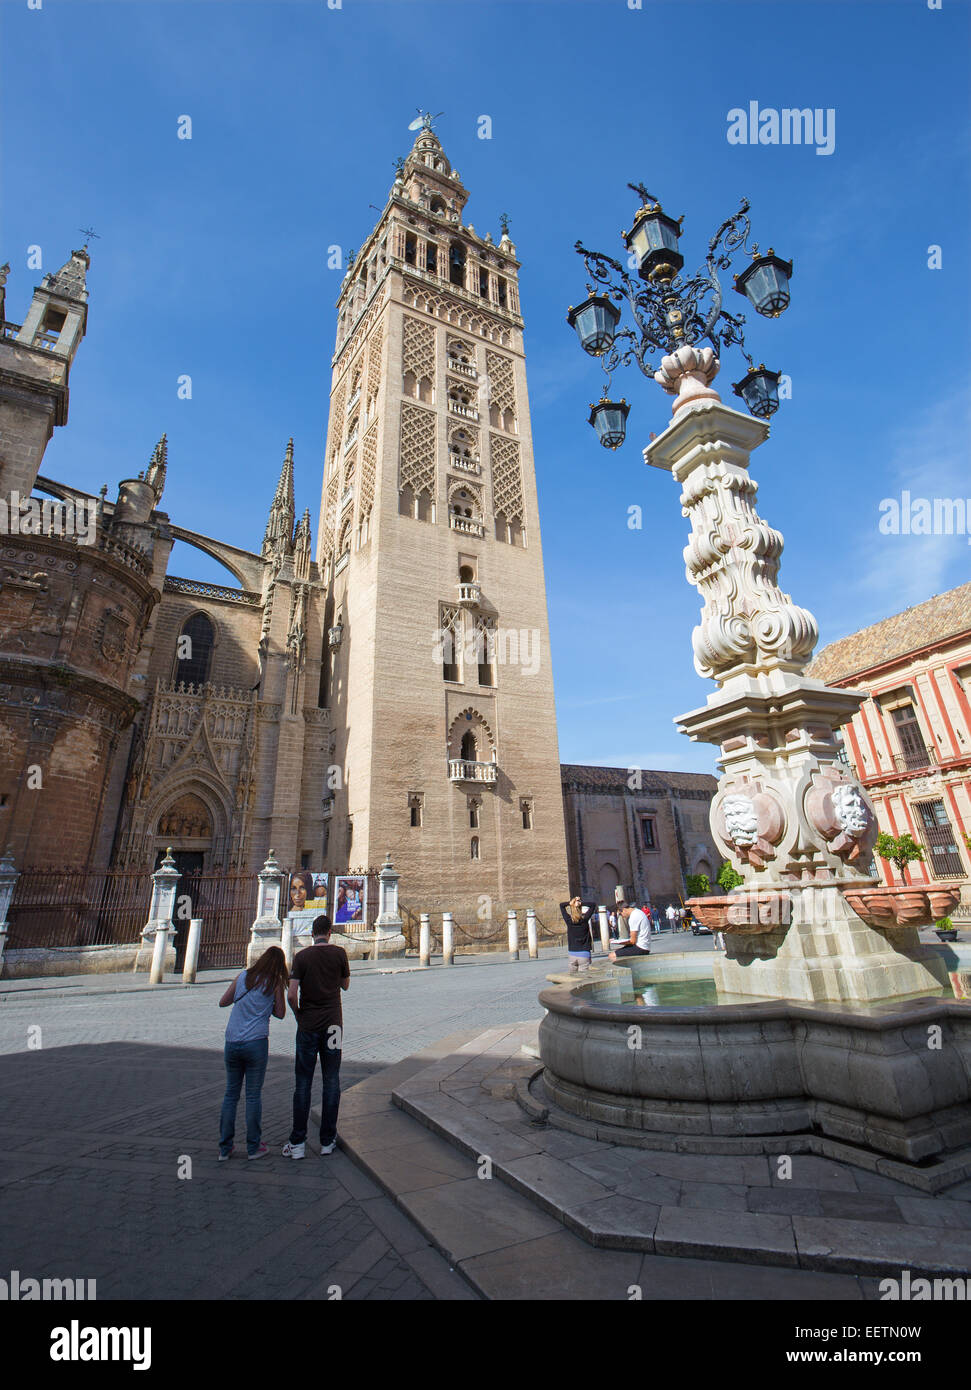 Sevilla, España - 28 de octubre de 2014: la Catedral de Santa María de la Sede de la Giralda desde la Plaza del Triumfo. Foto de stock